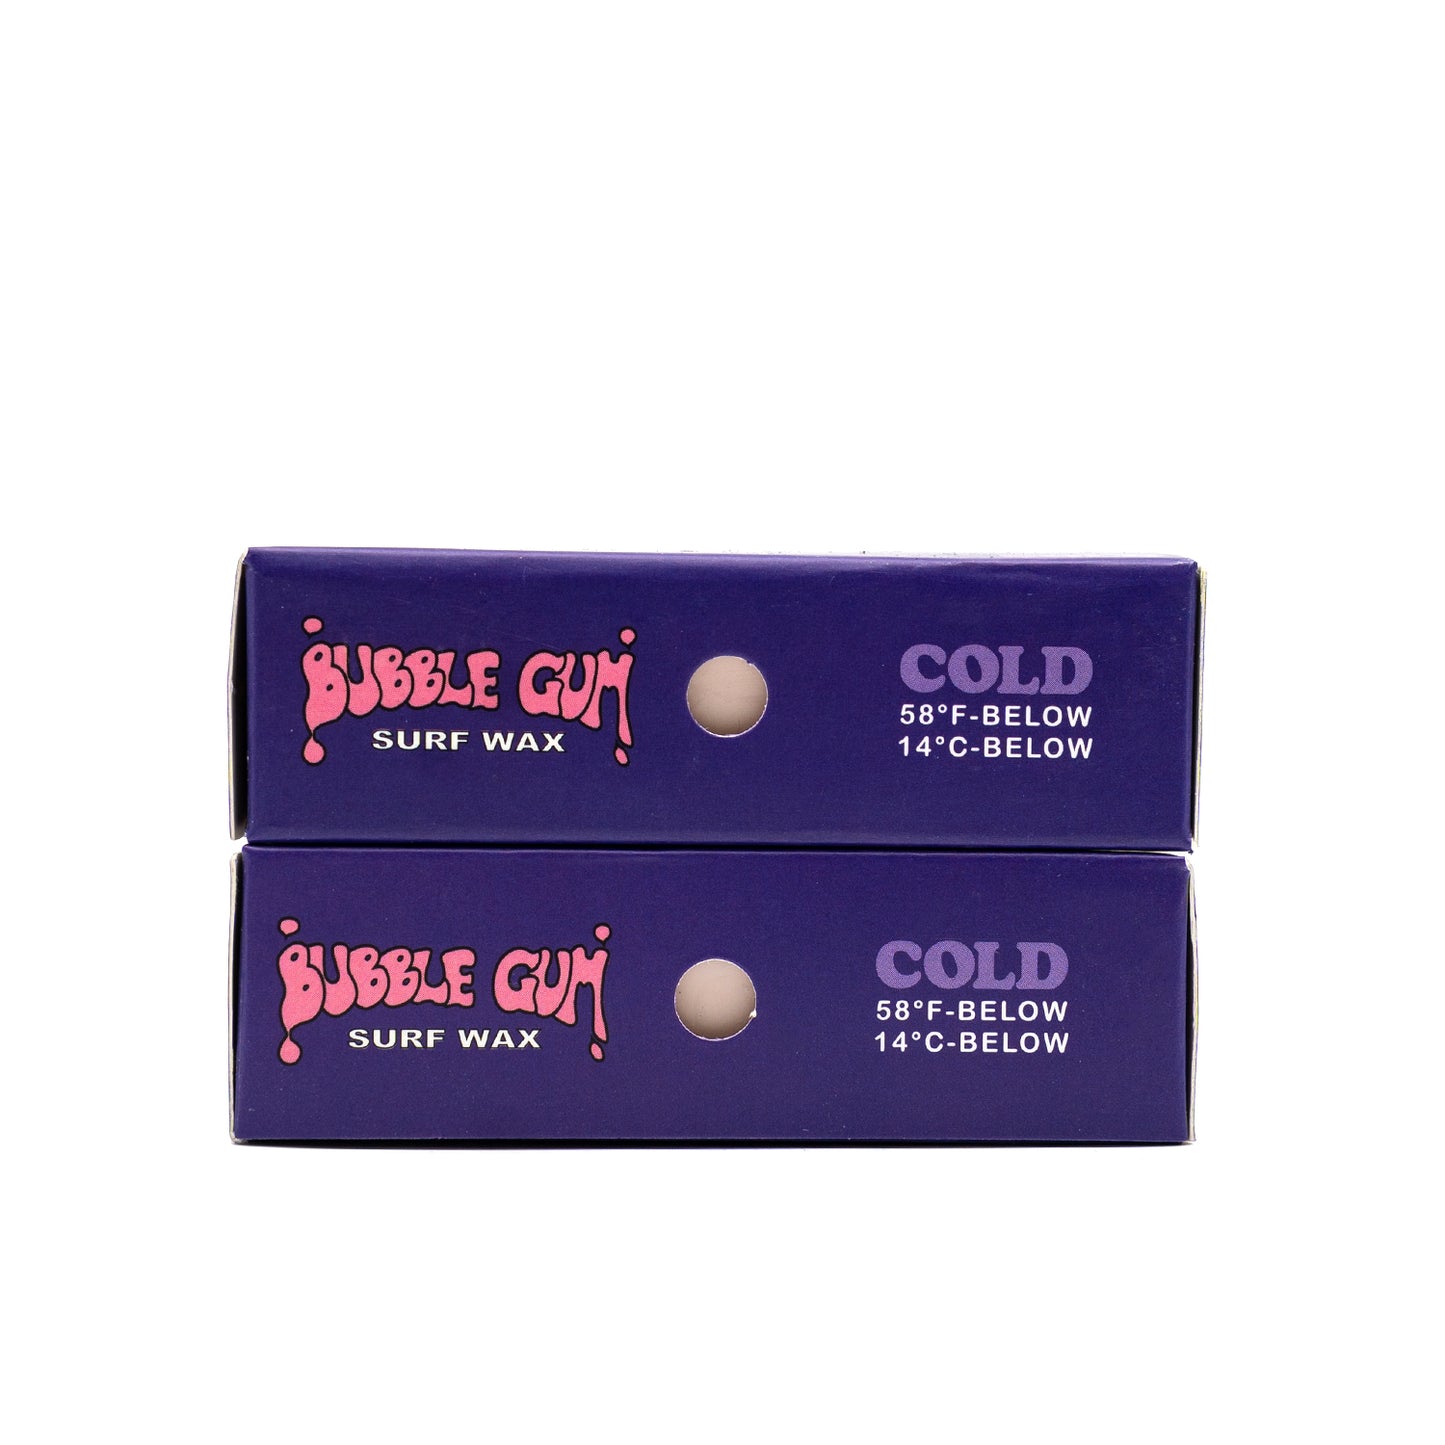 Bubble Gum "Original Formula" Surf Wax Box - Cold - 58° & Below